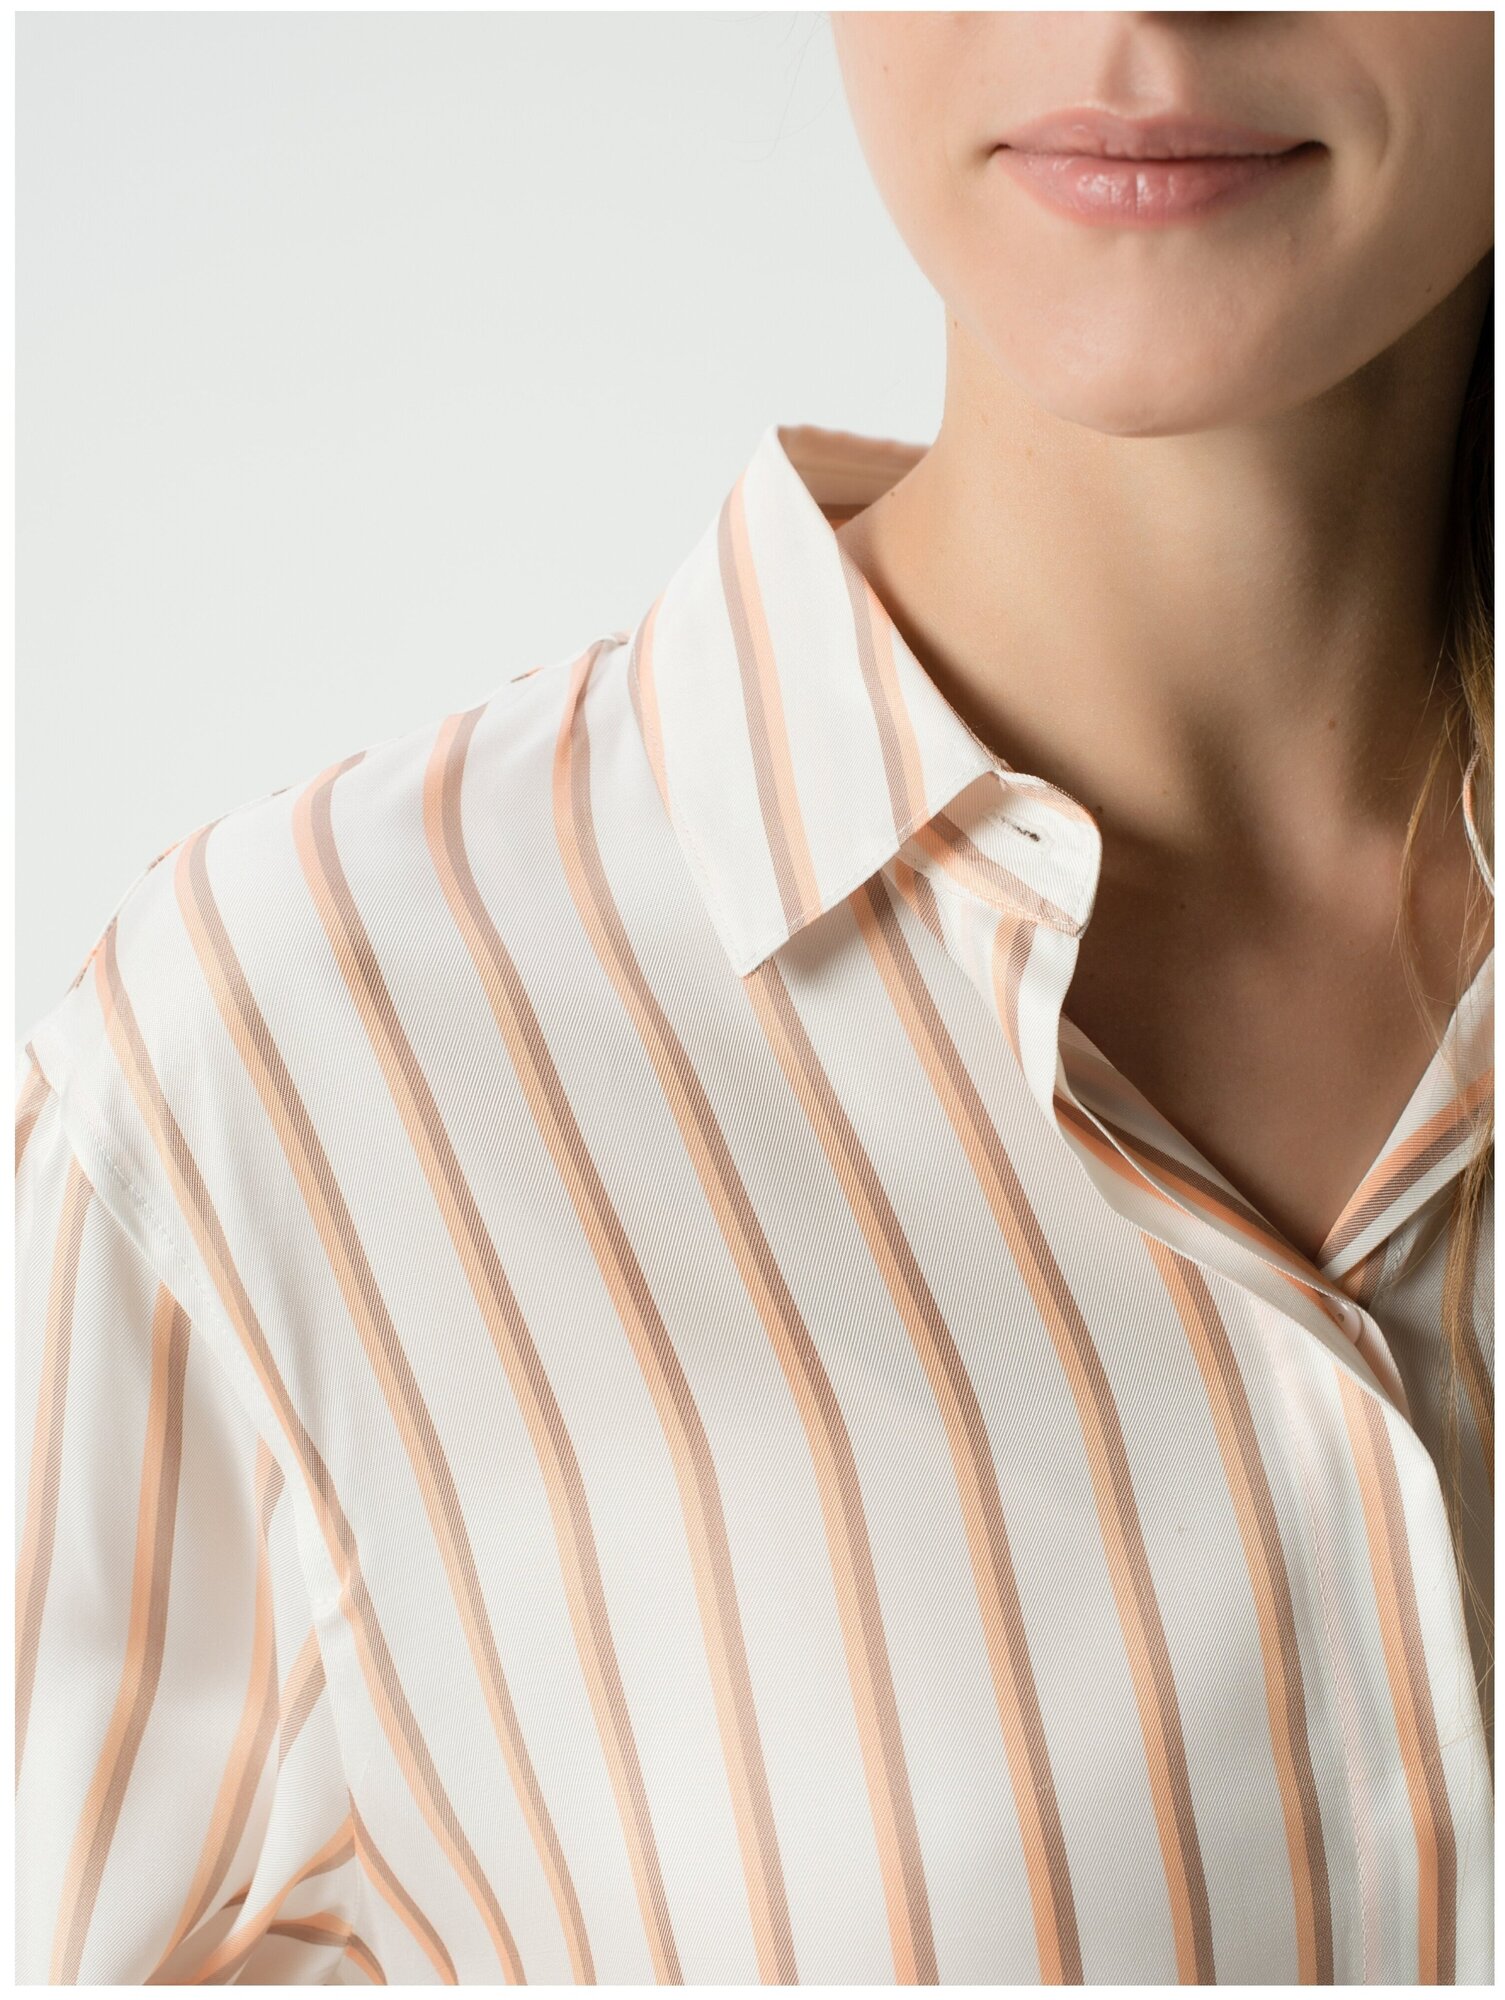 Рубашка женская, Gerry Weber, 760008-31406-9102, белый, размер - 40 - фотография № 5